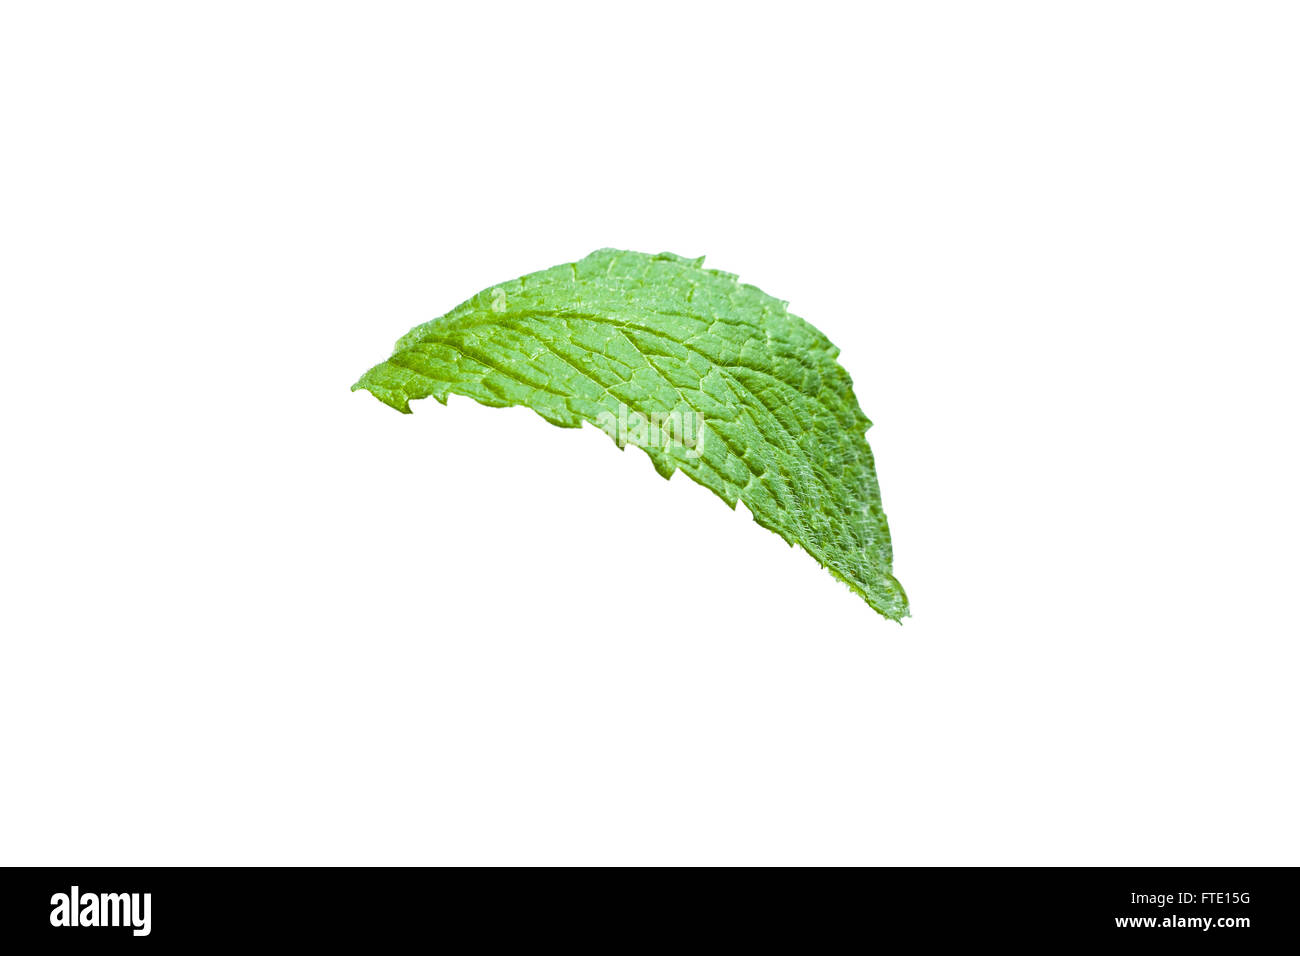 Single mint leaf isolated on white background Stock Photo